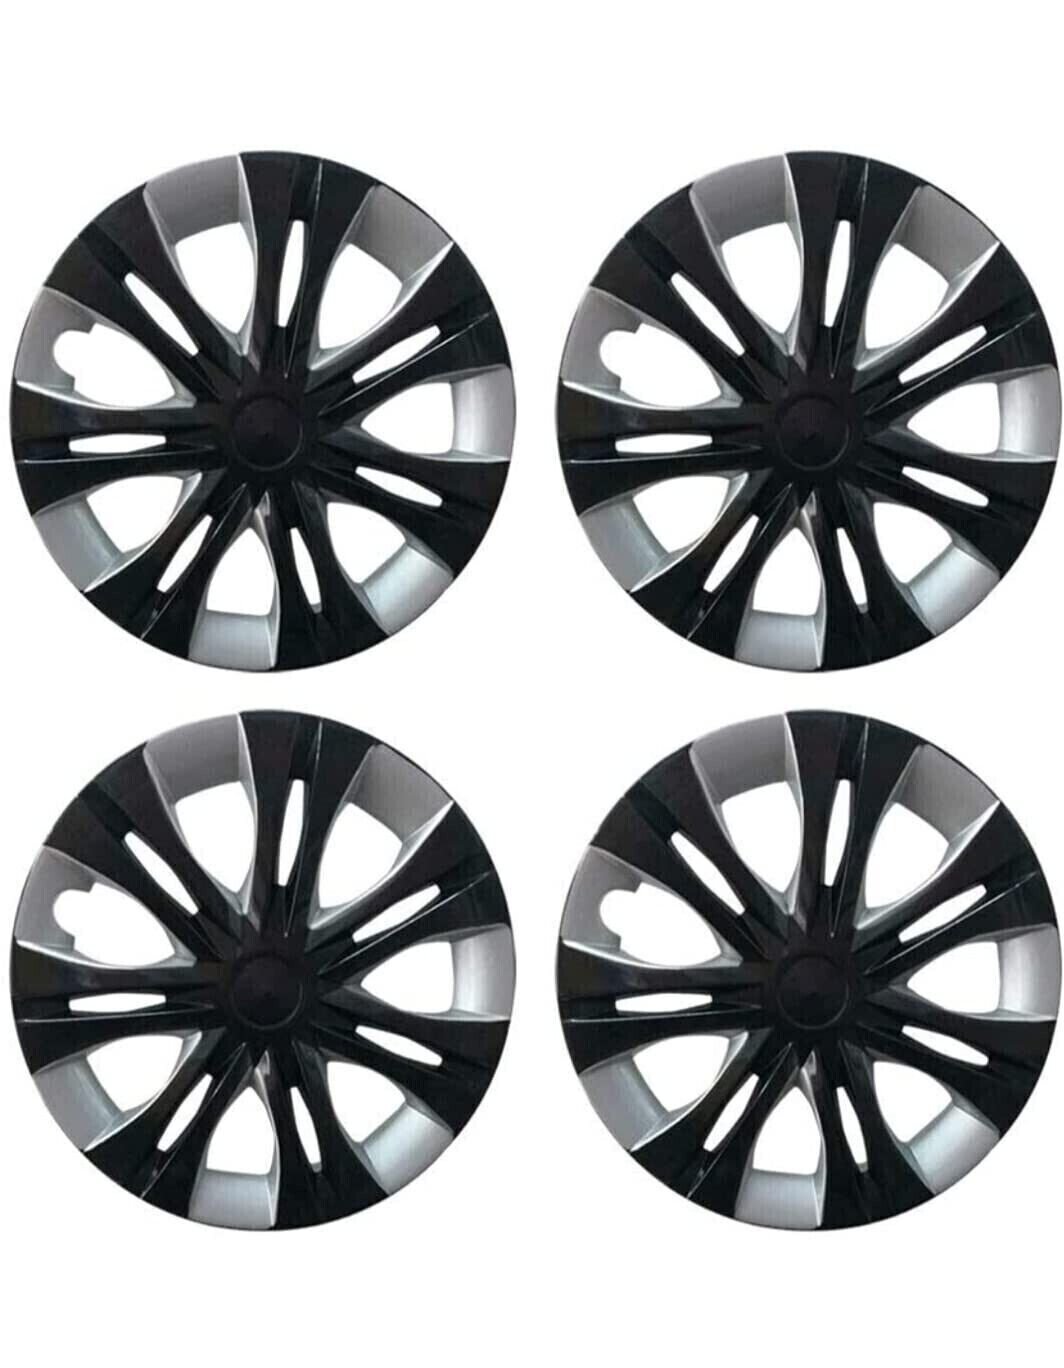 Plastic Black And Silver 15 inch Bolero Wheel Cover, Round at Rs 400/set in  New Delhi